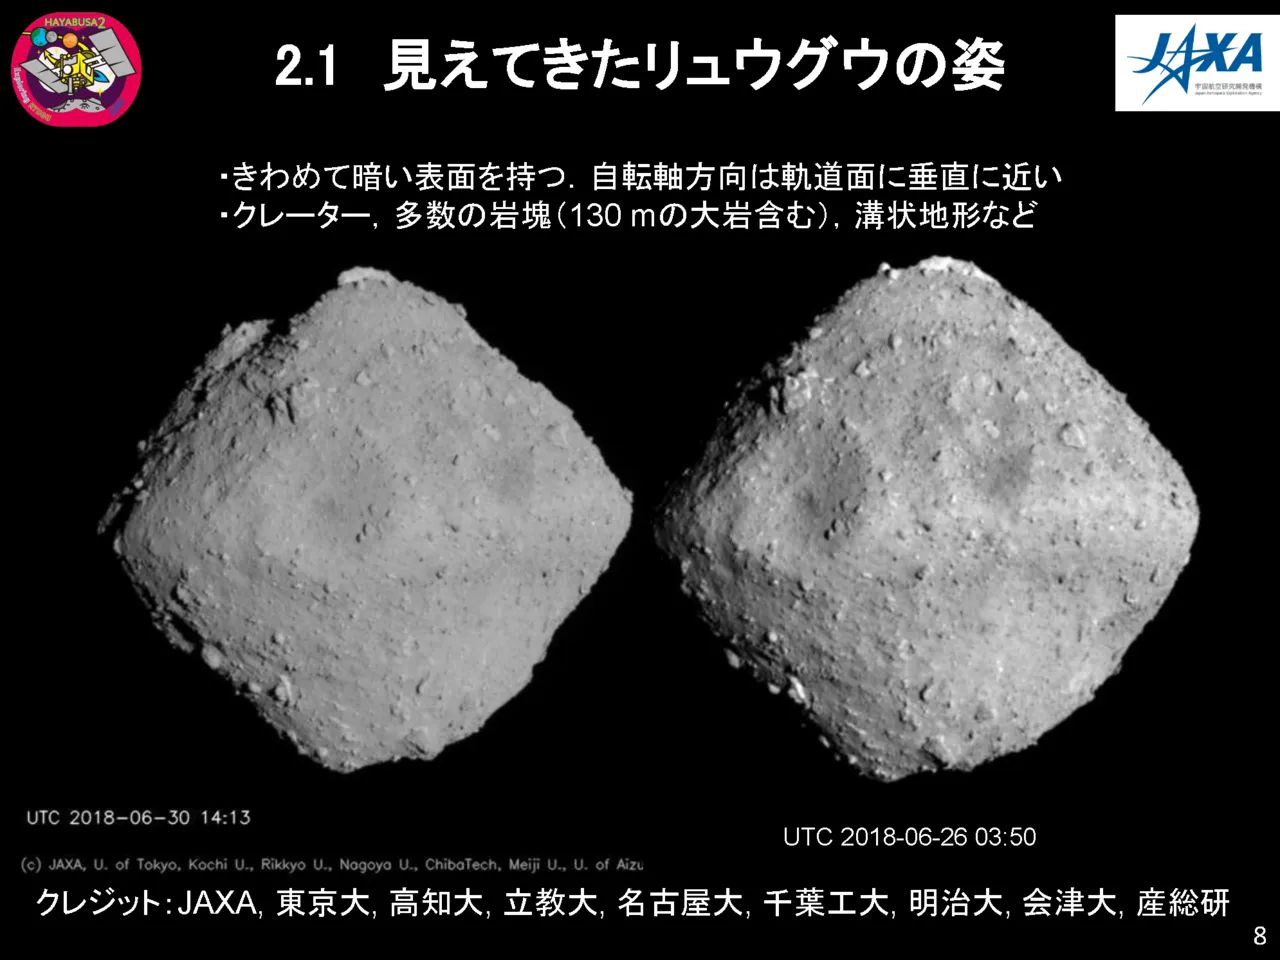 隼鳥2號拍攝到的小行星龍宮的照片，JAXA